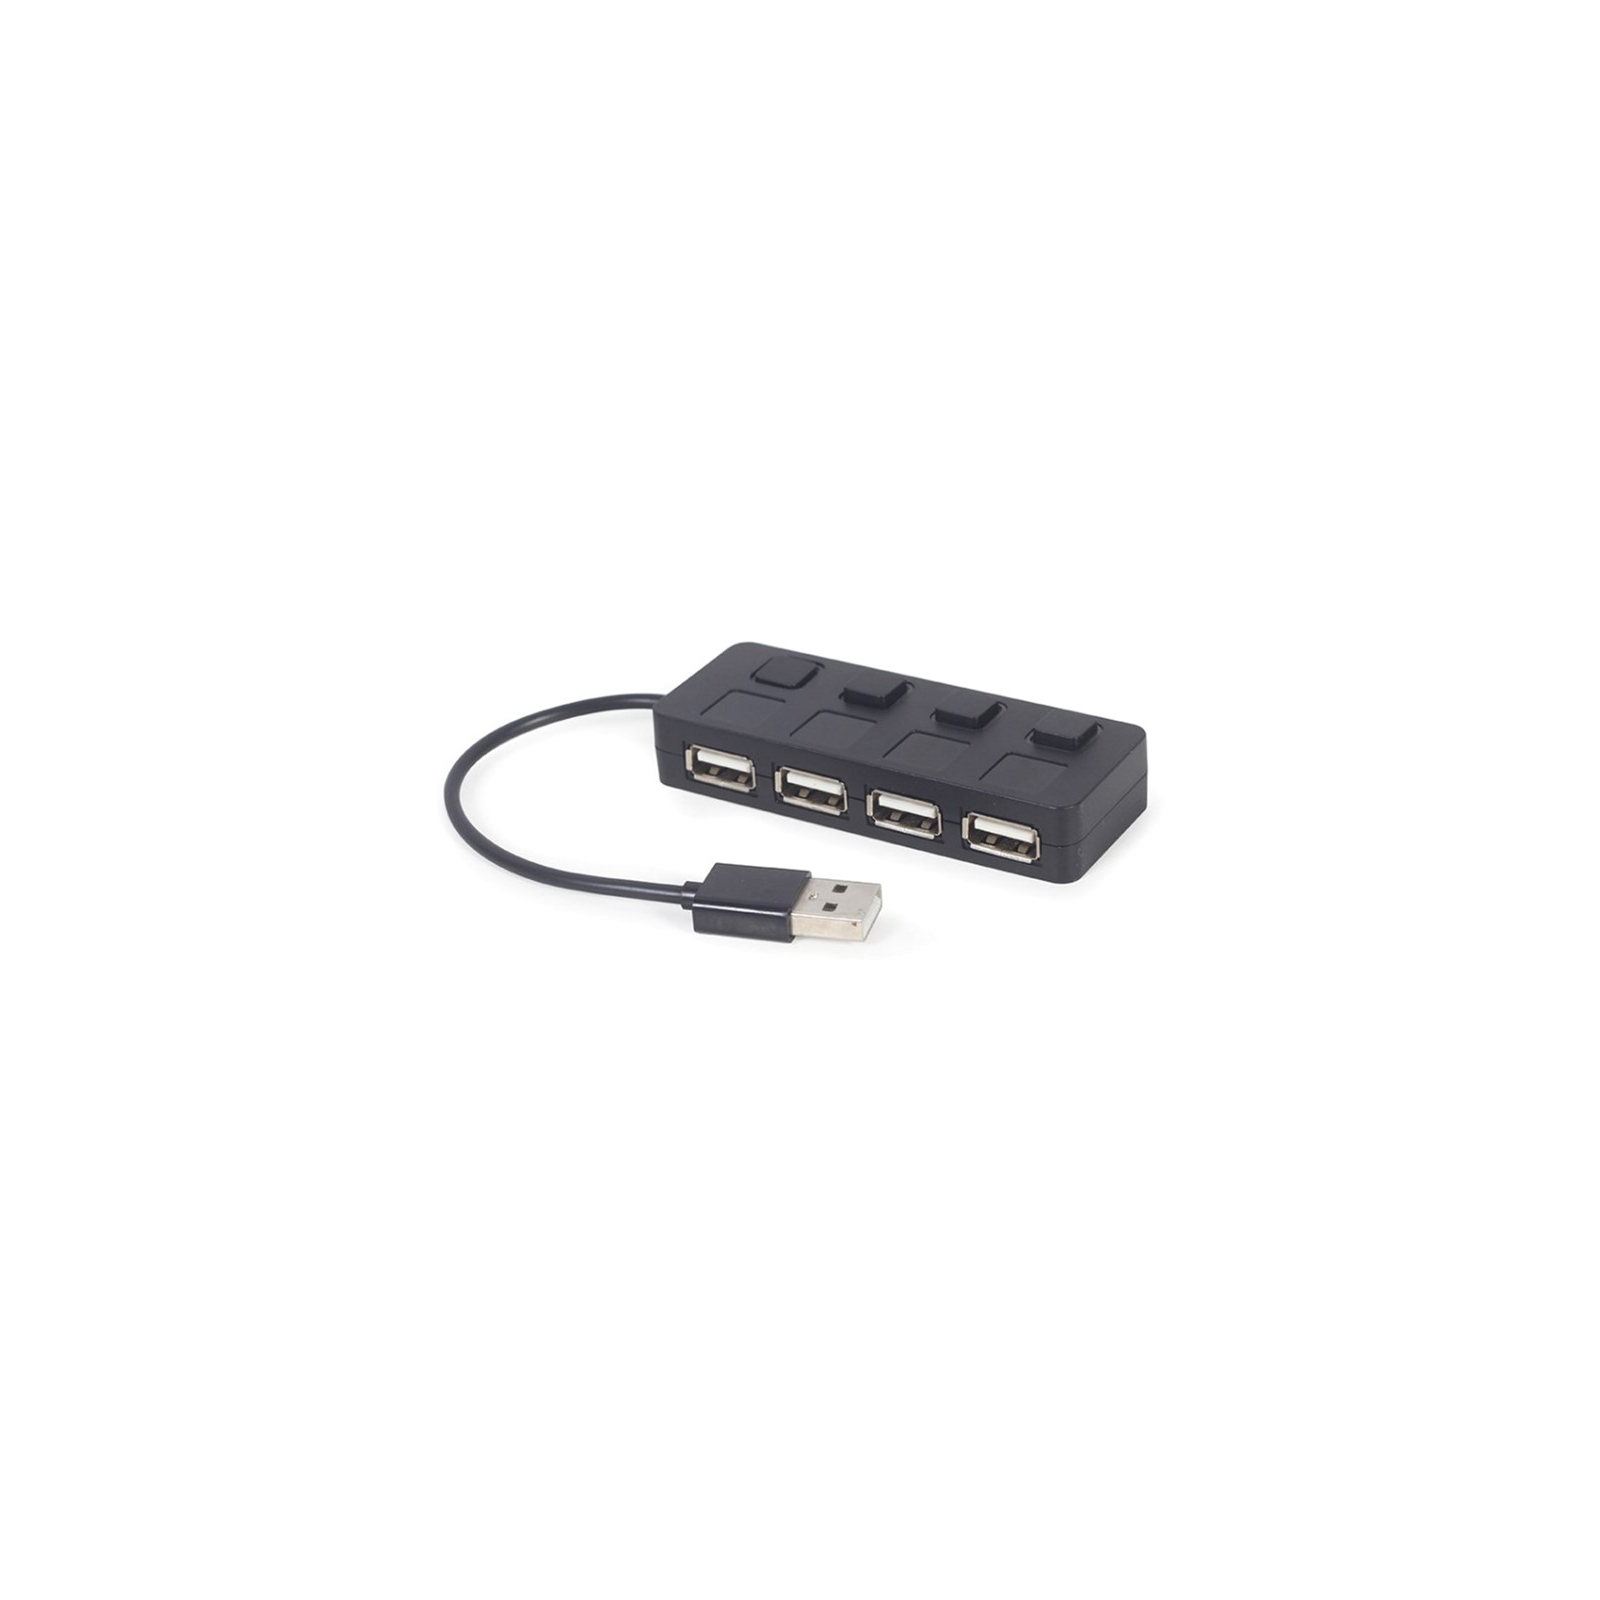 Концентратор Gembird USB 2.0 4 ports switch black (UHB-U2P4-05) изображение 2